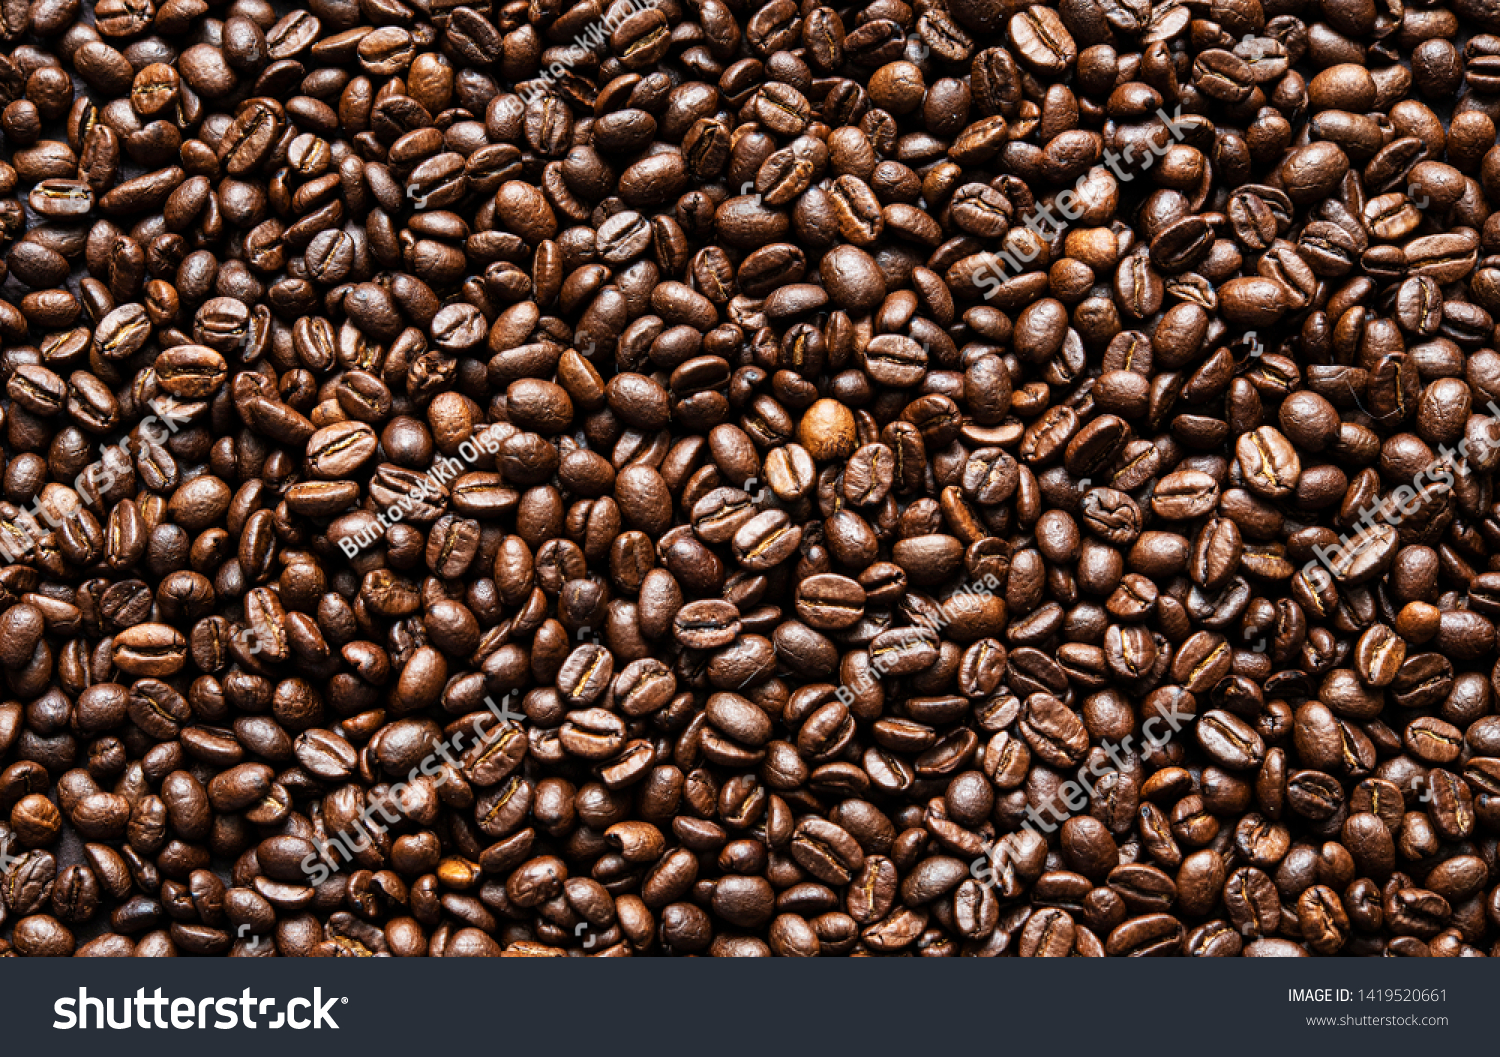 新鮮なコーヒー豆の茶色の種子テクスチャ背景にフル壁紙 の写真素材 今すぐ編集